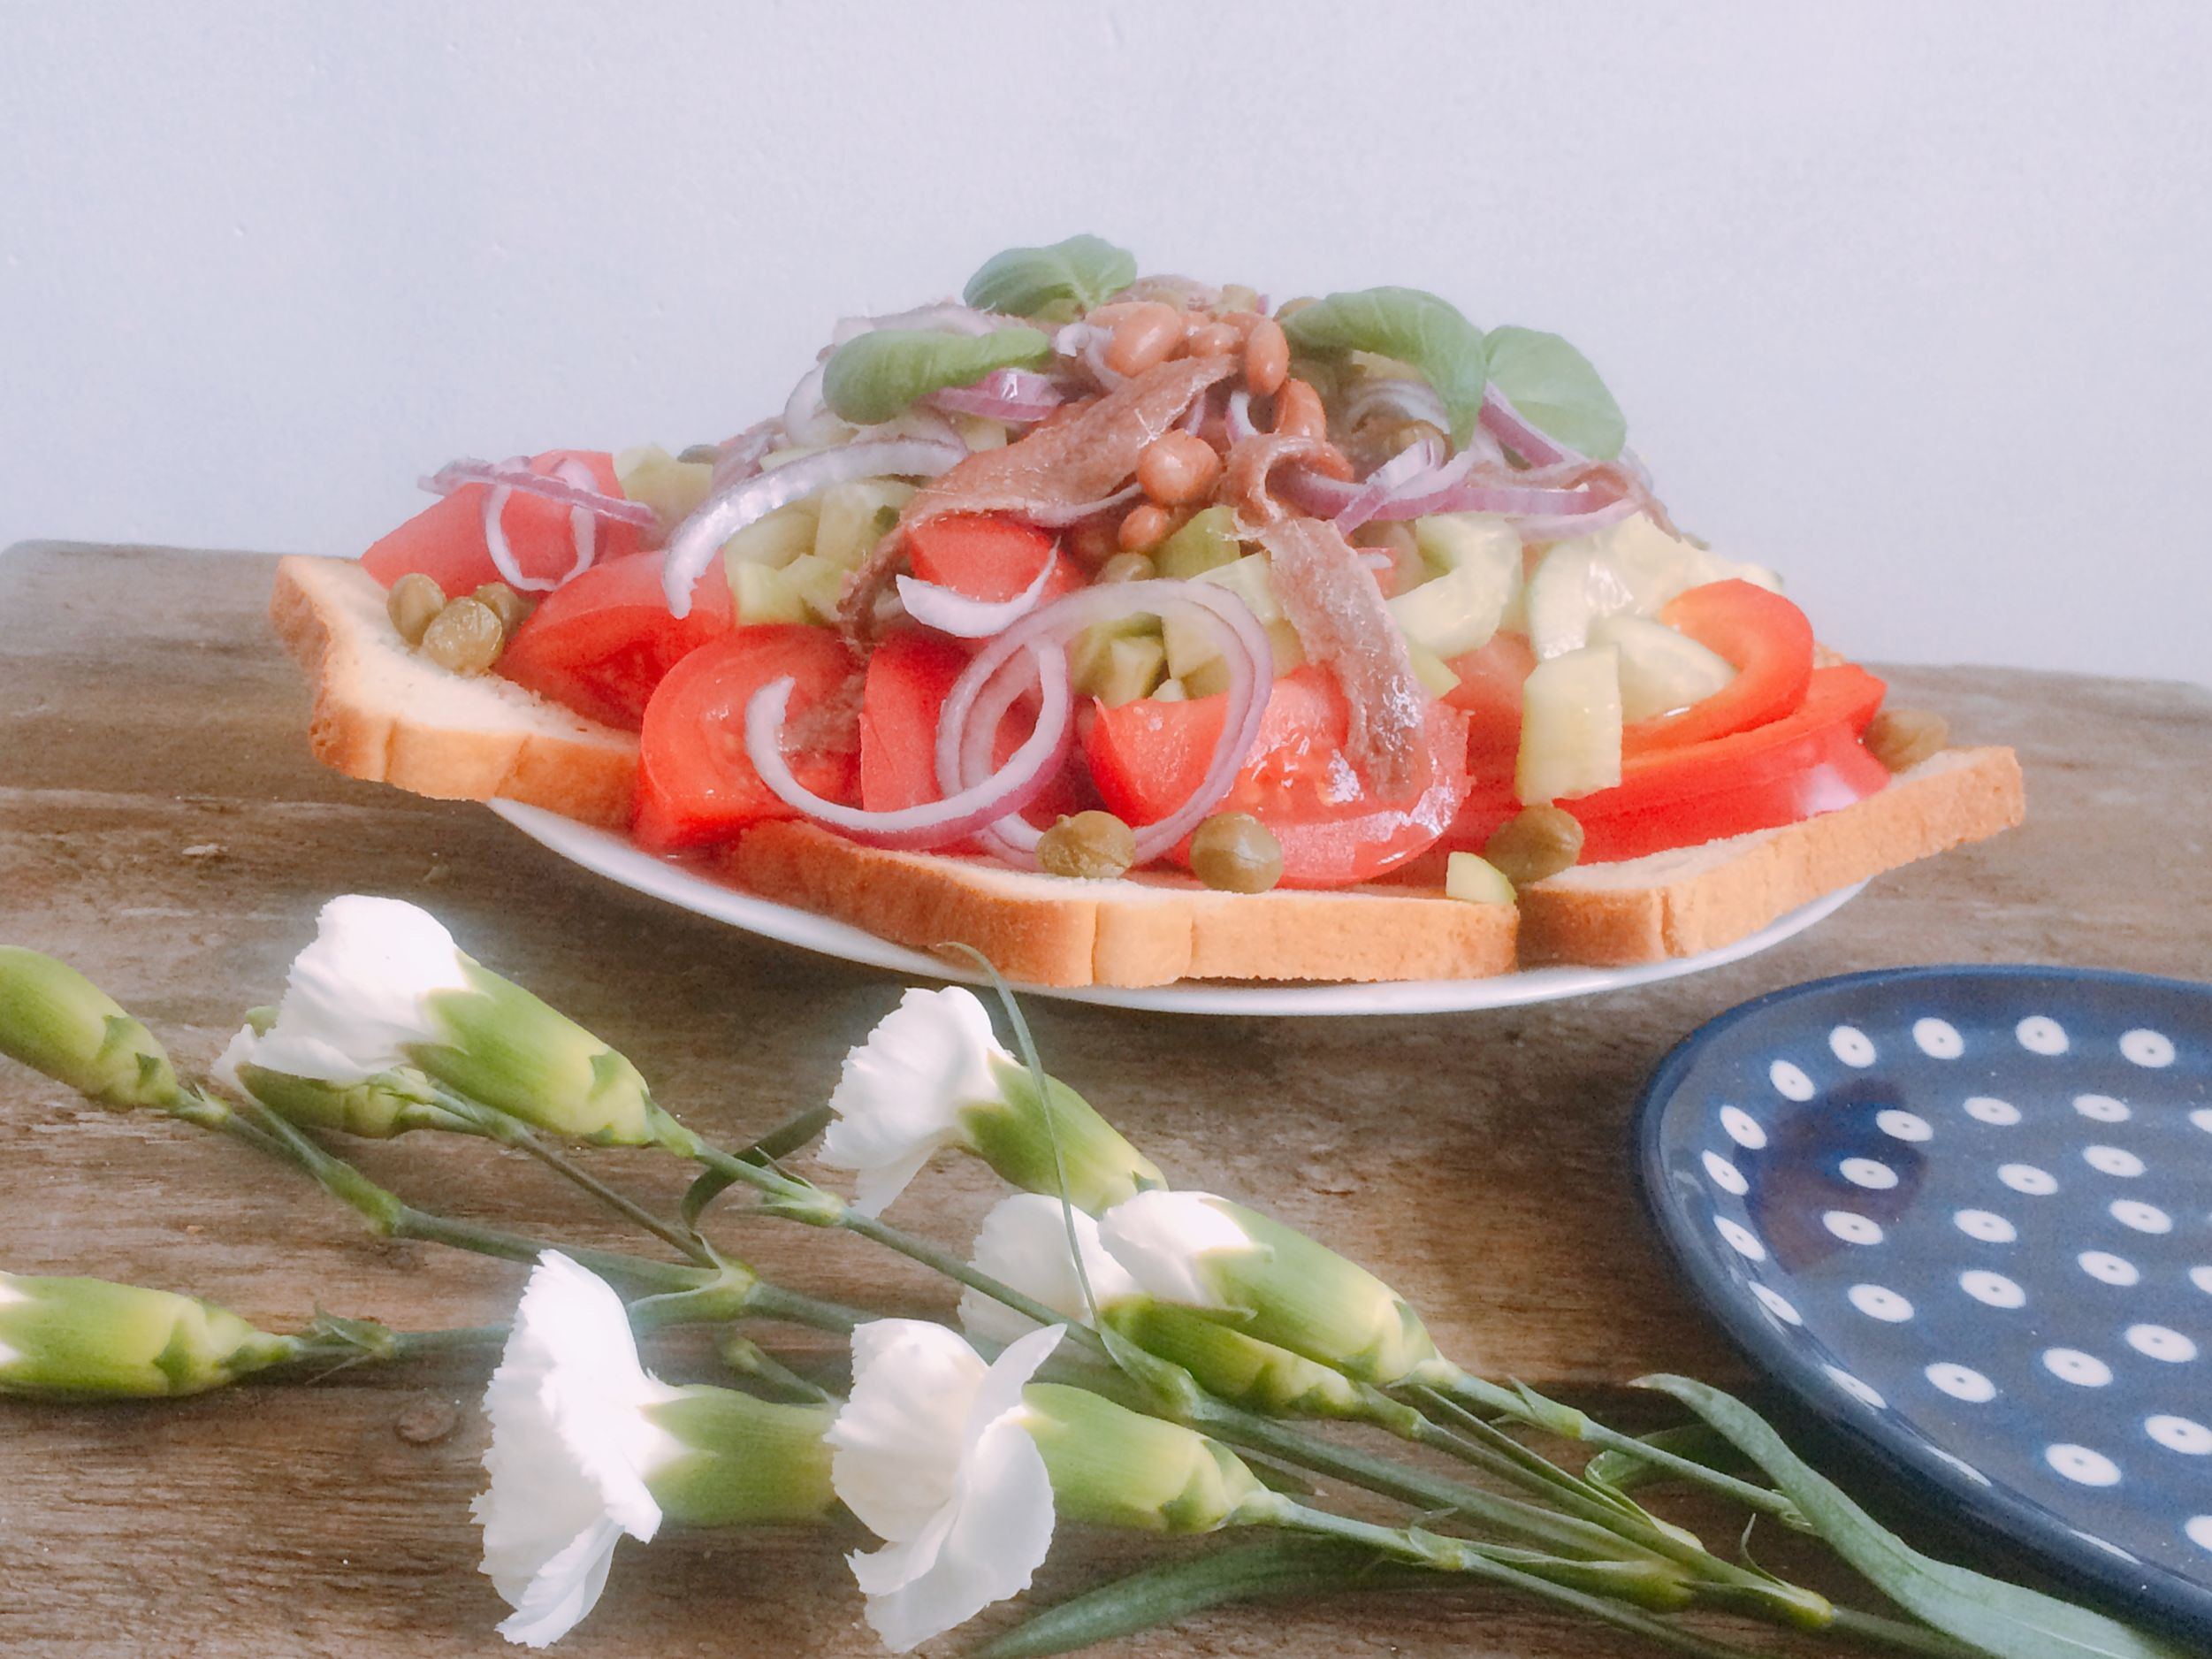 Panzanella – wersja zimowa sałatki z pomidorów i sucharków